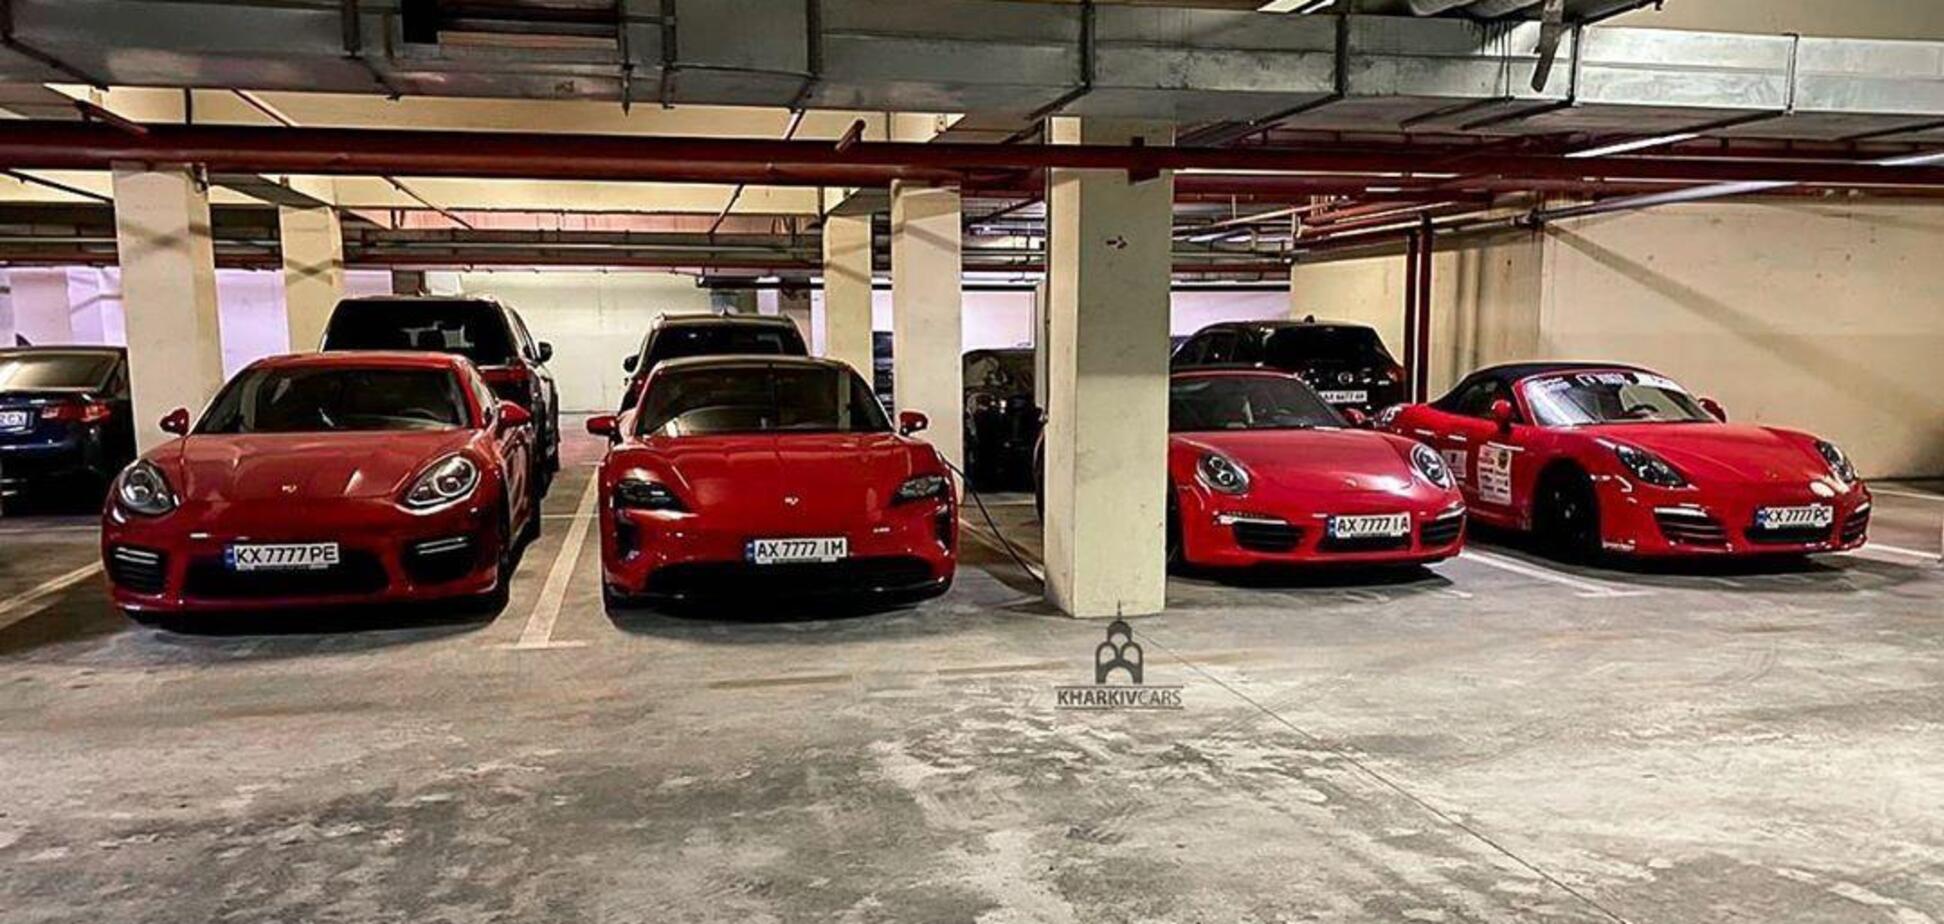 На подземном паркинге в Харькове засняли впечатляющую коллекцию Porsche